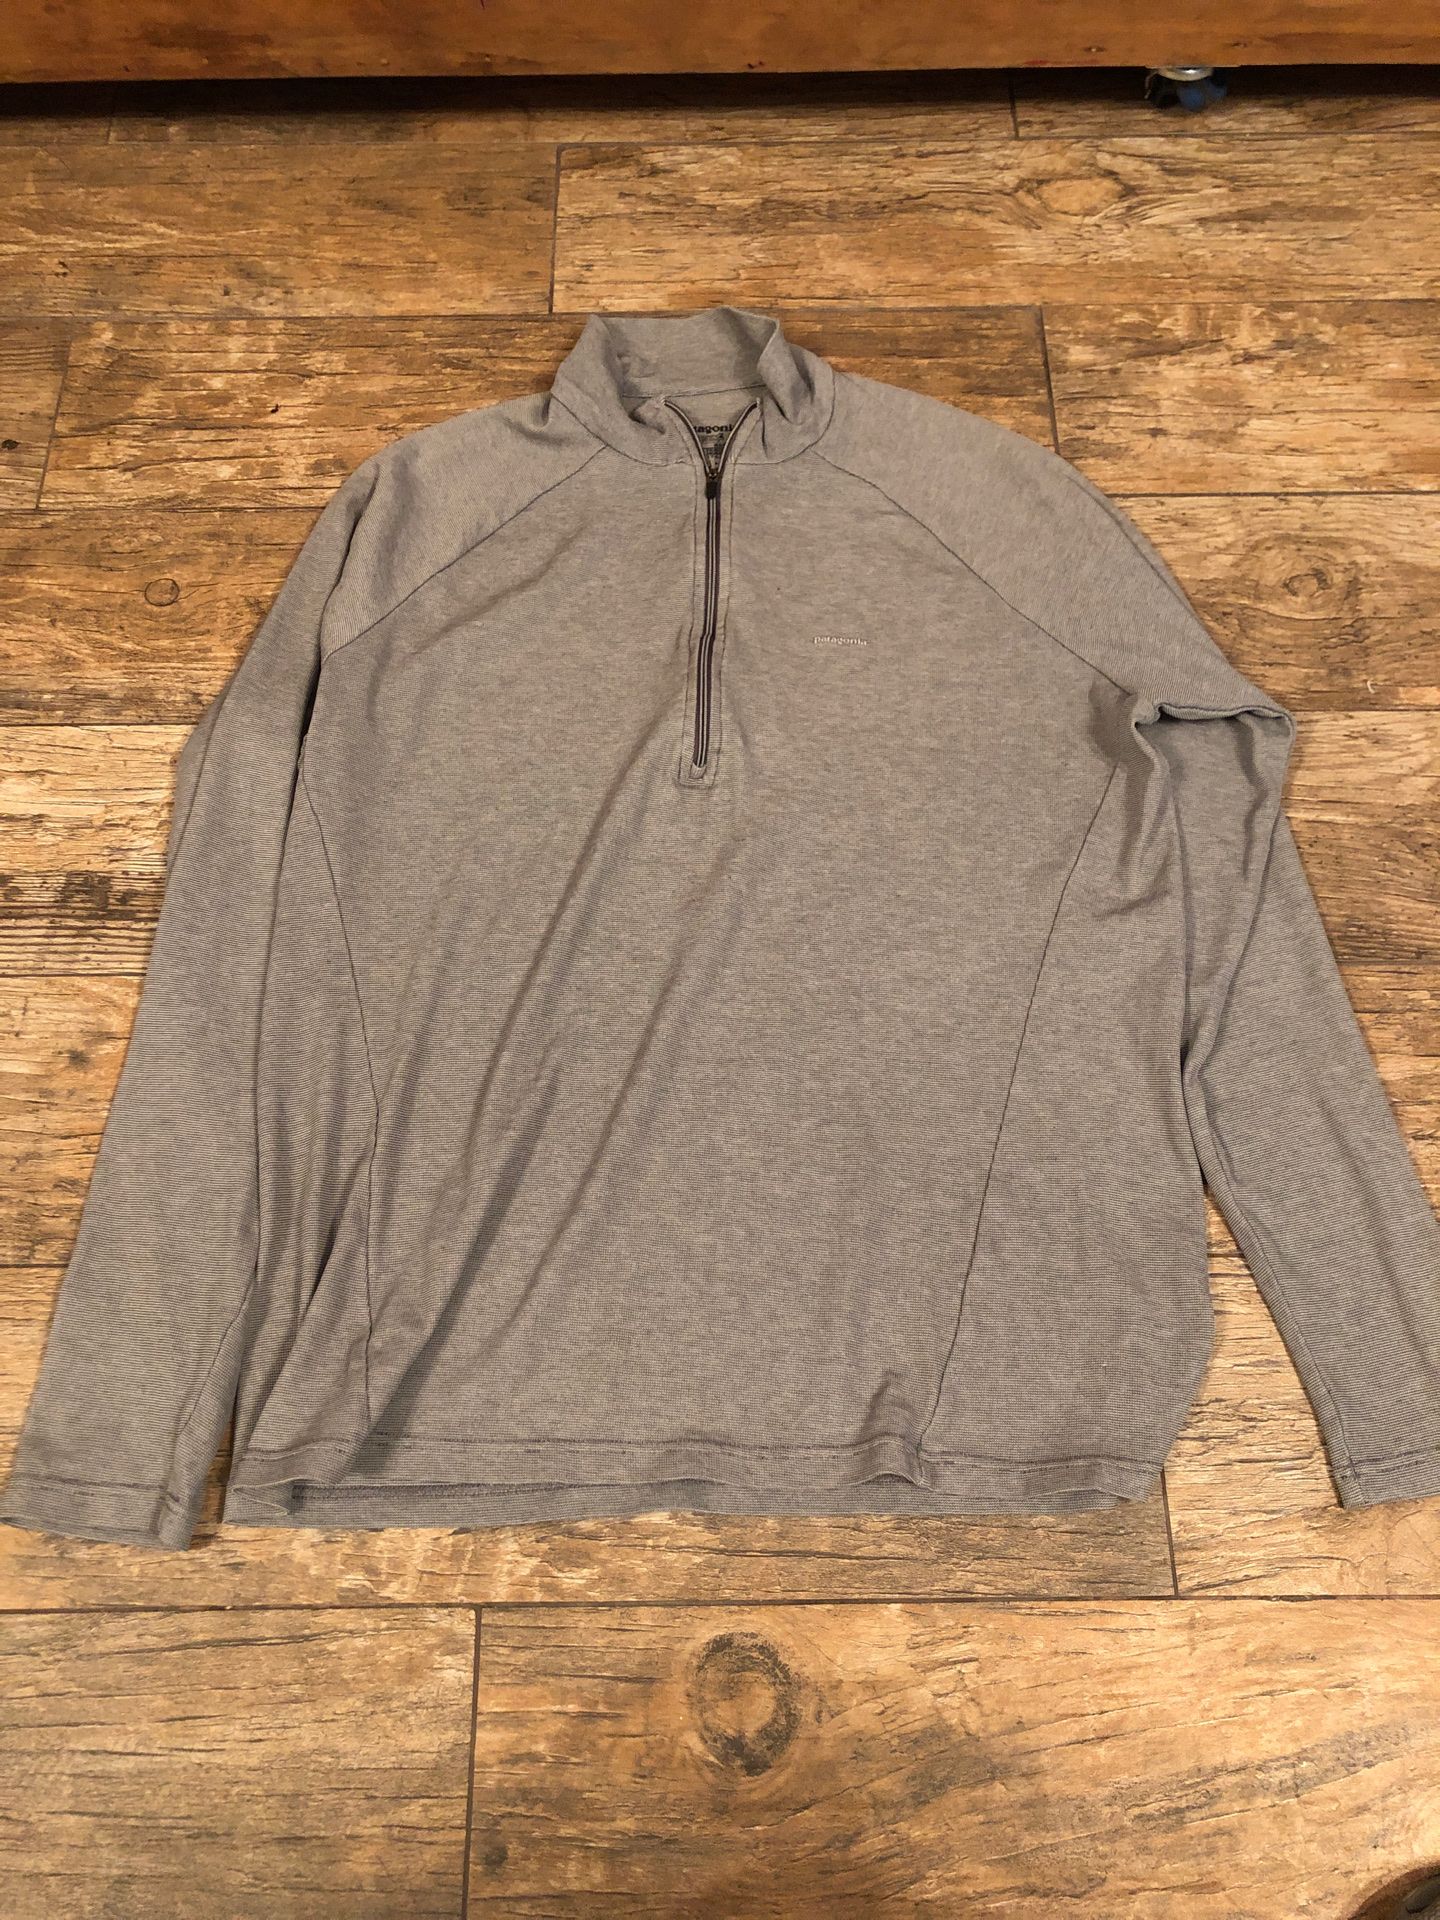 Patagonia long sleeve quarter zip shirt size large